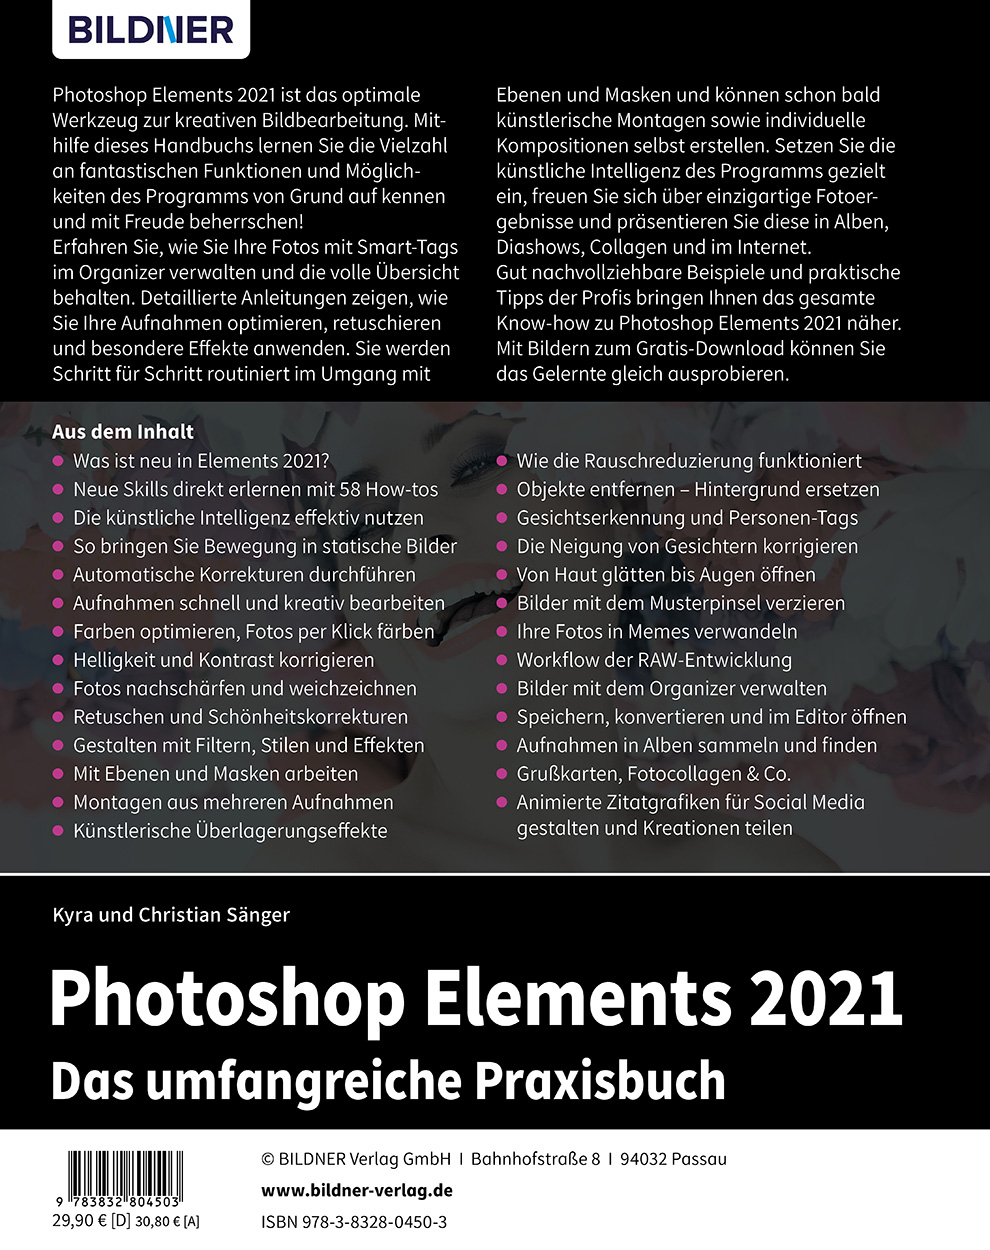 Photoshop Elements 2021 Bildner Verlag Gmbh Buchverlag In Passau